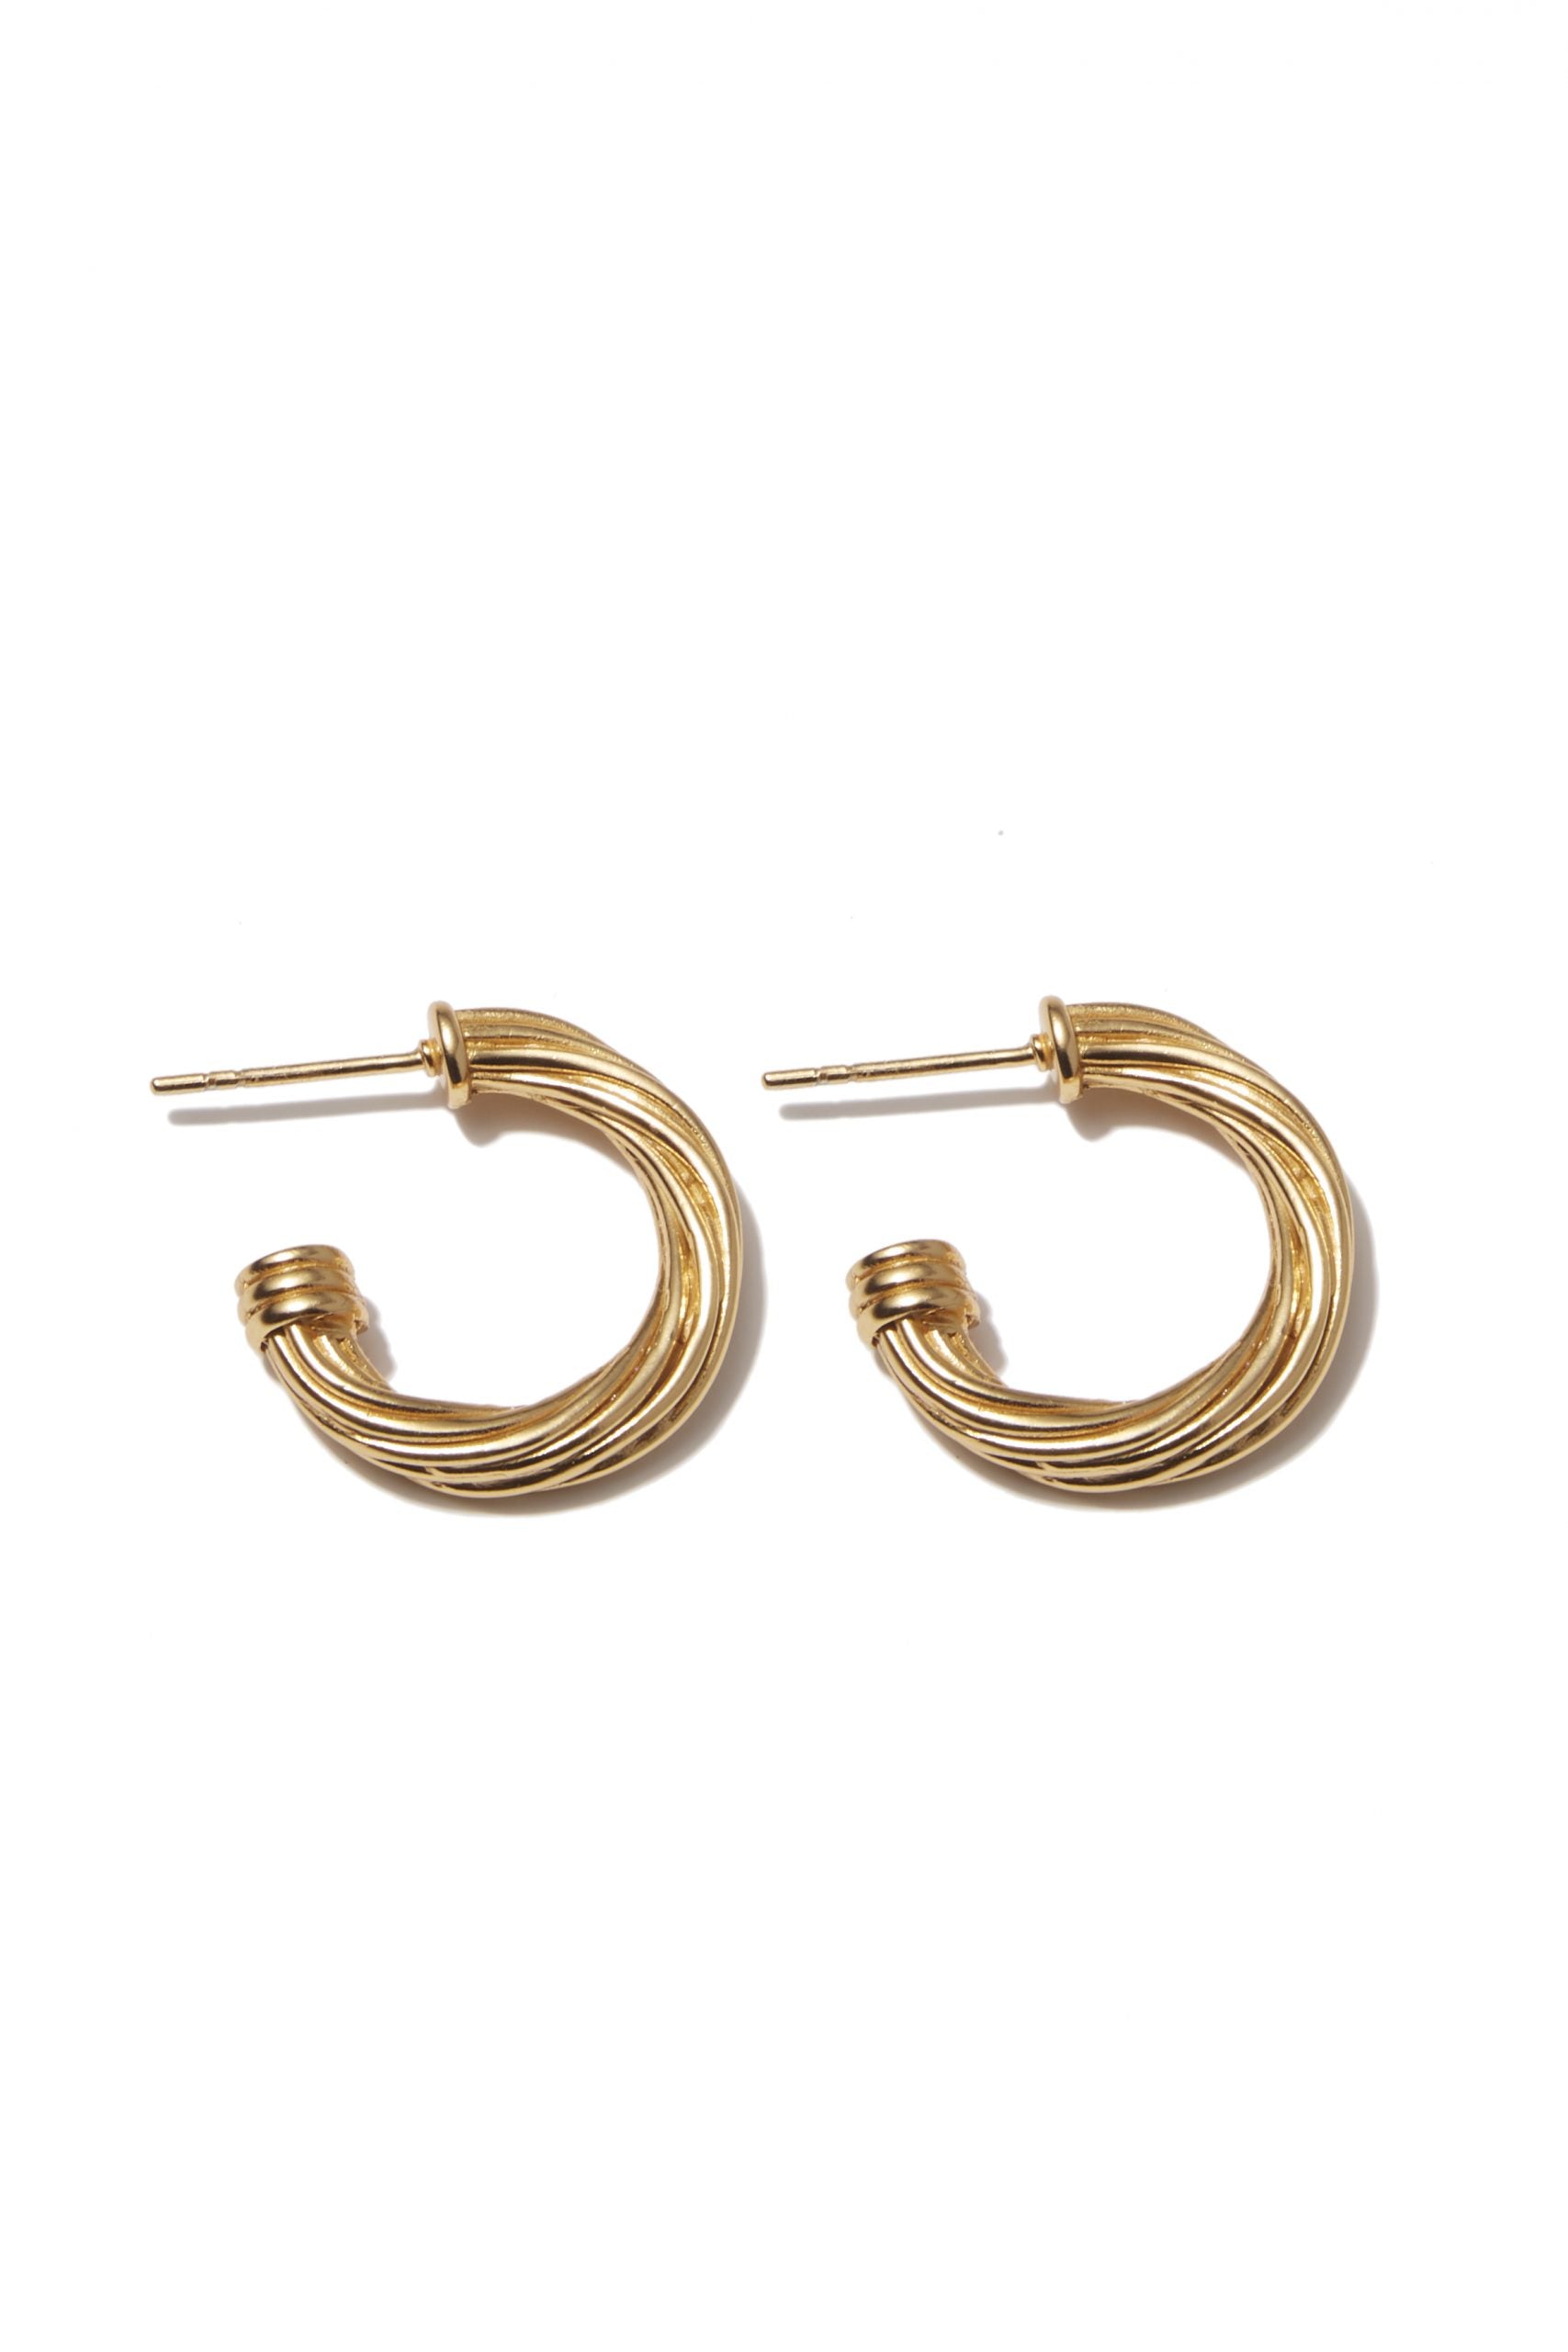 Avenelle earrings brass